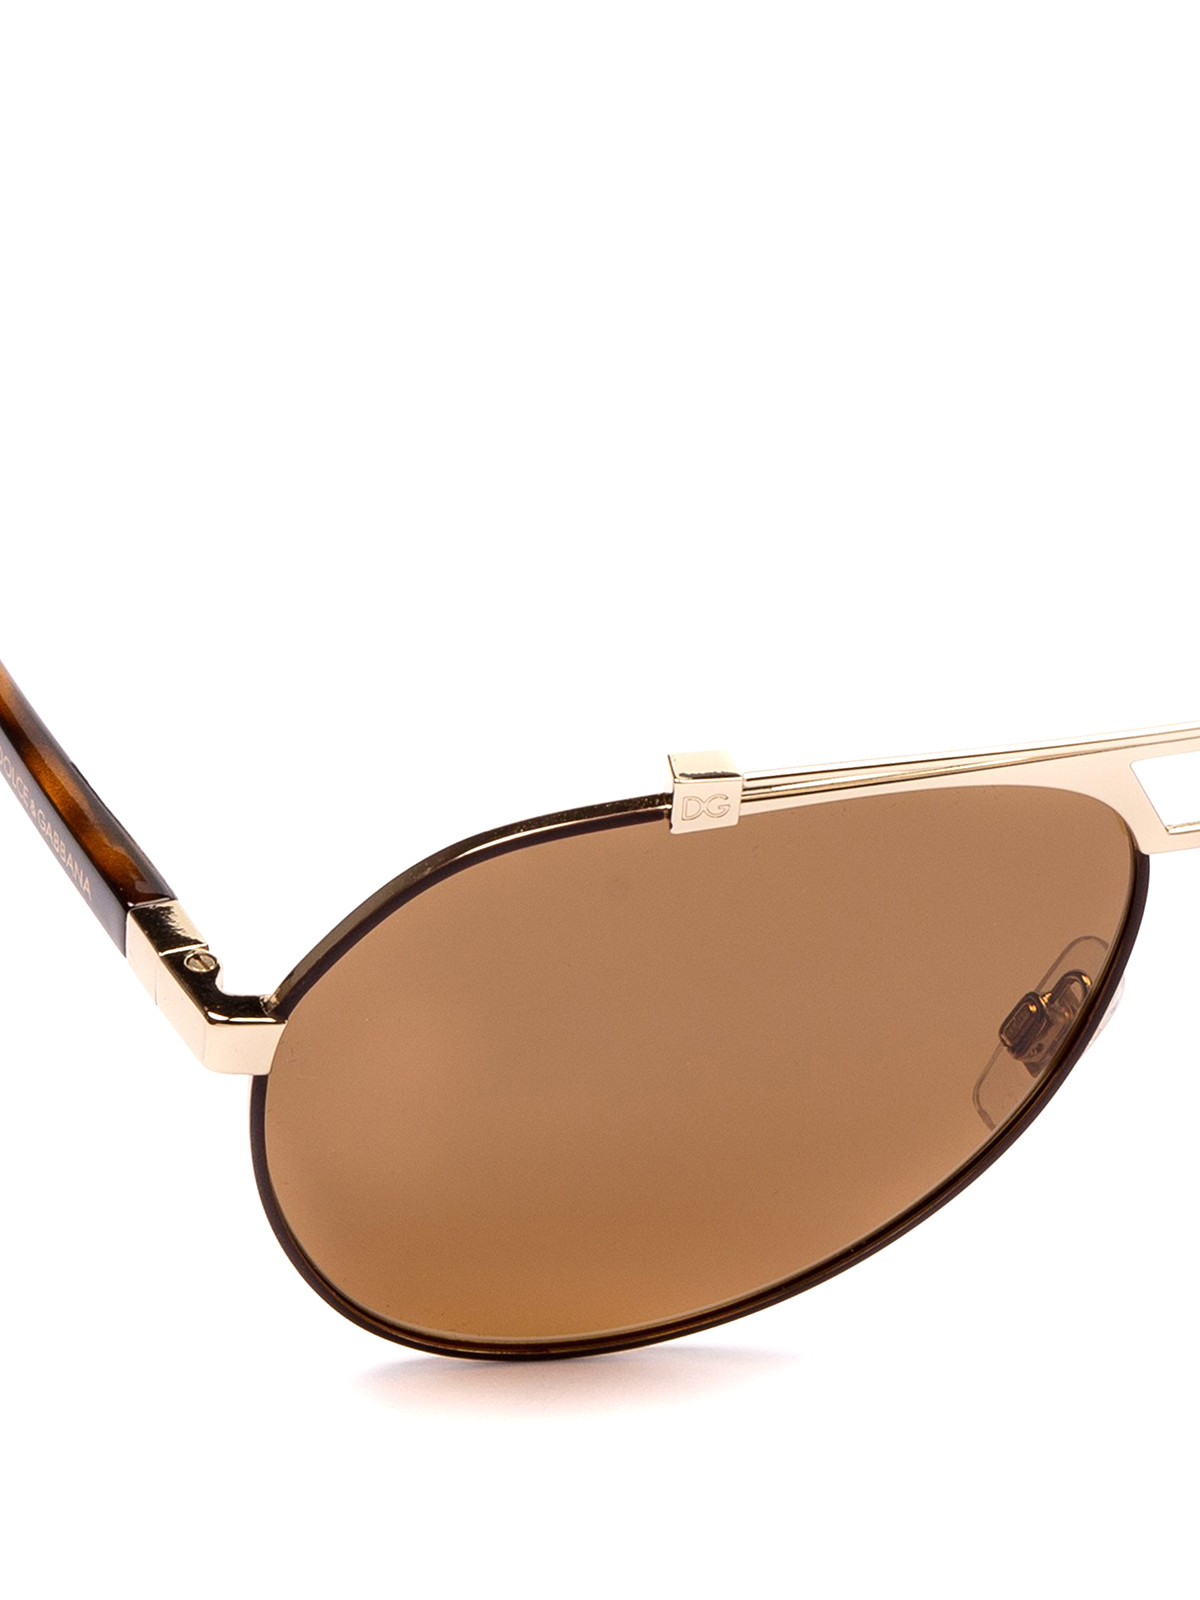 Dolce \u0026 Gabbana - Aviator sunglasses 